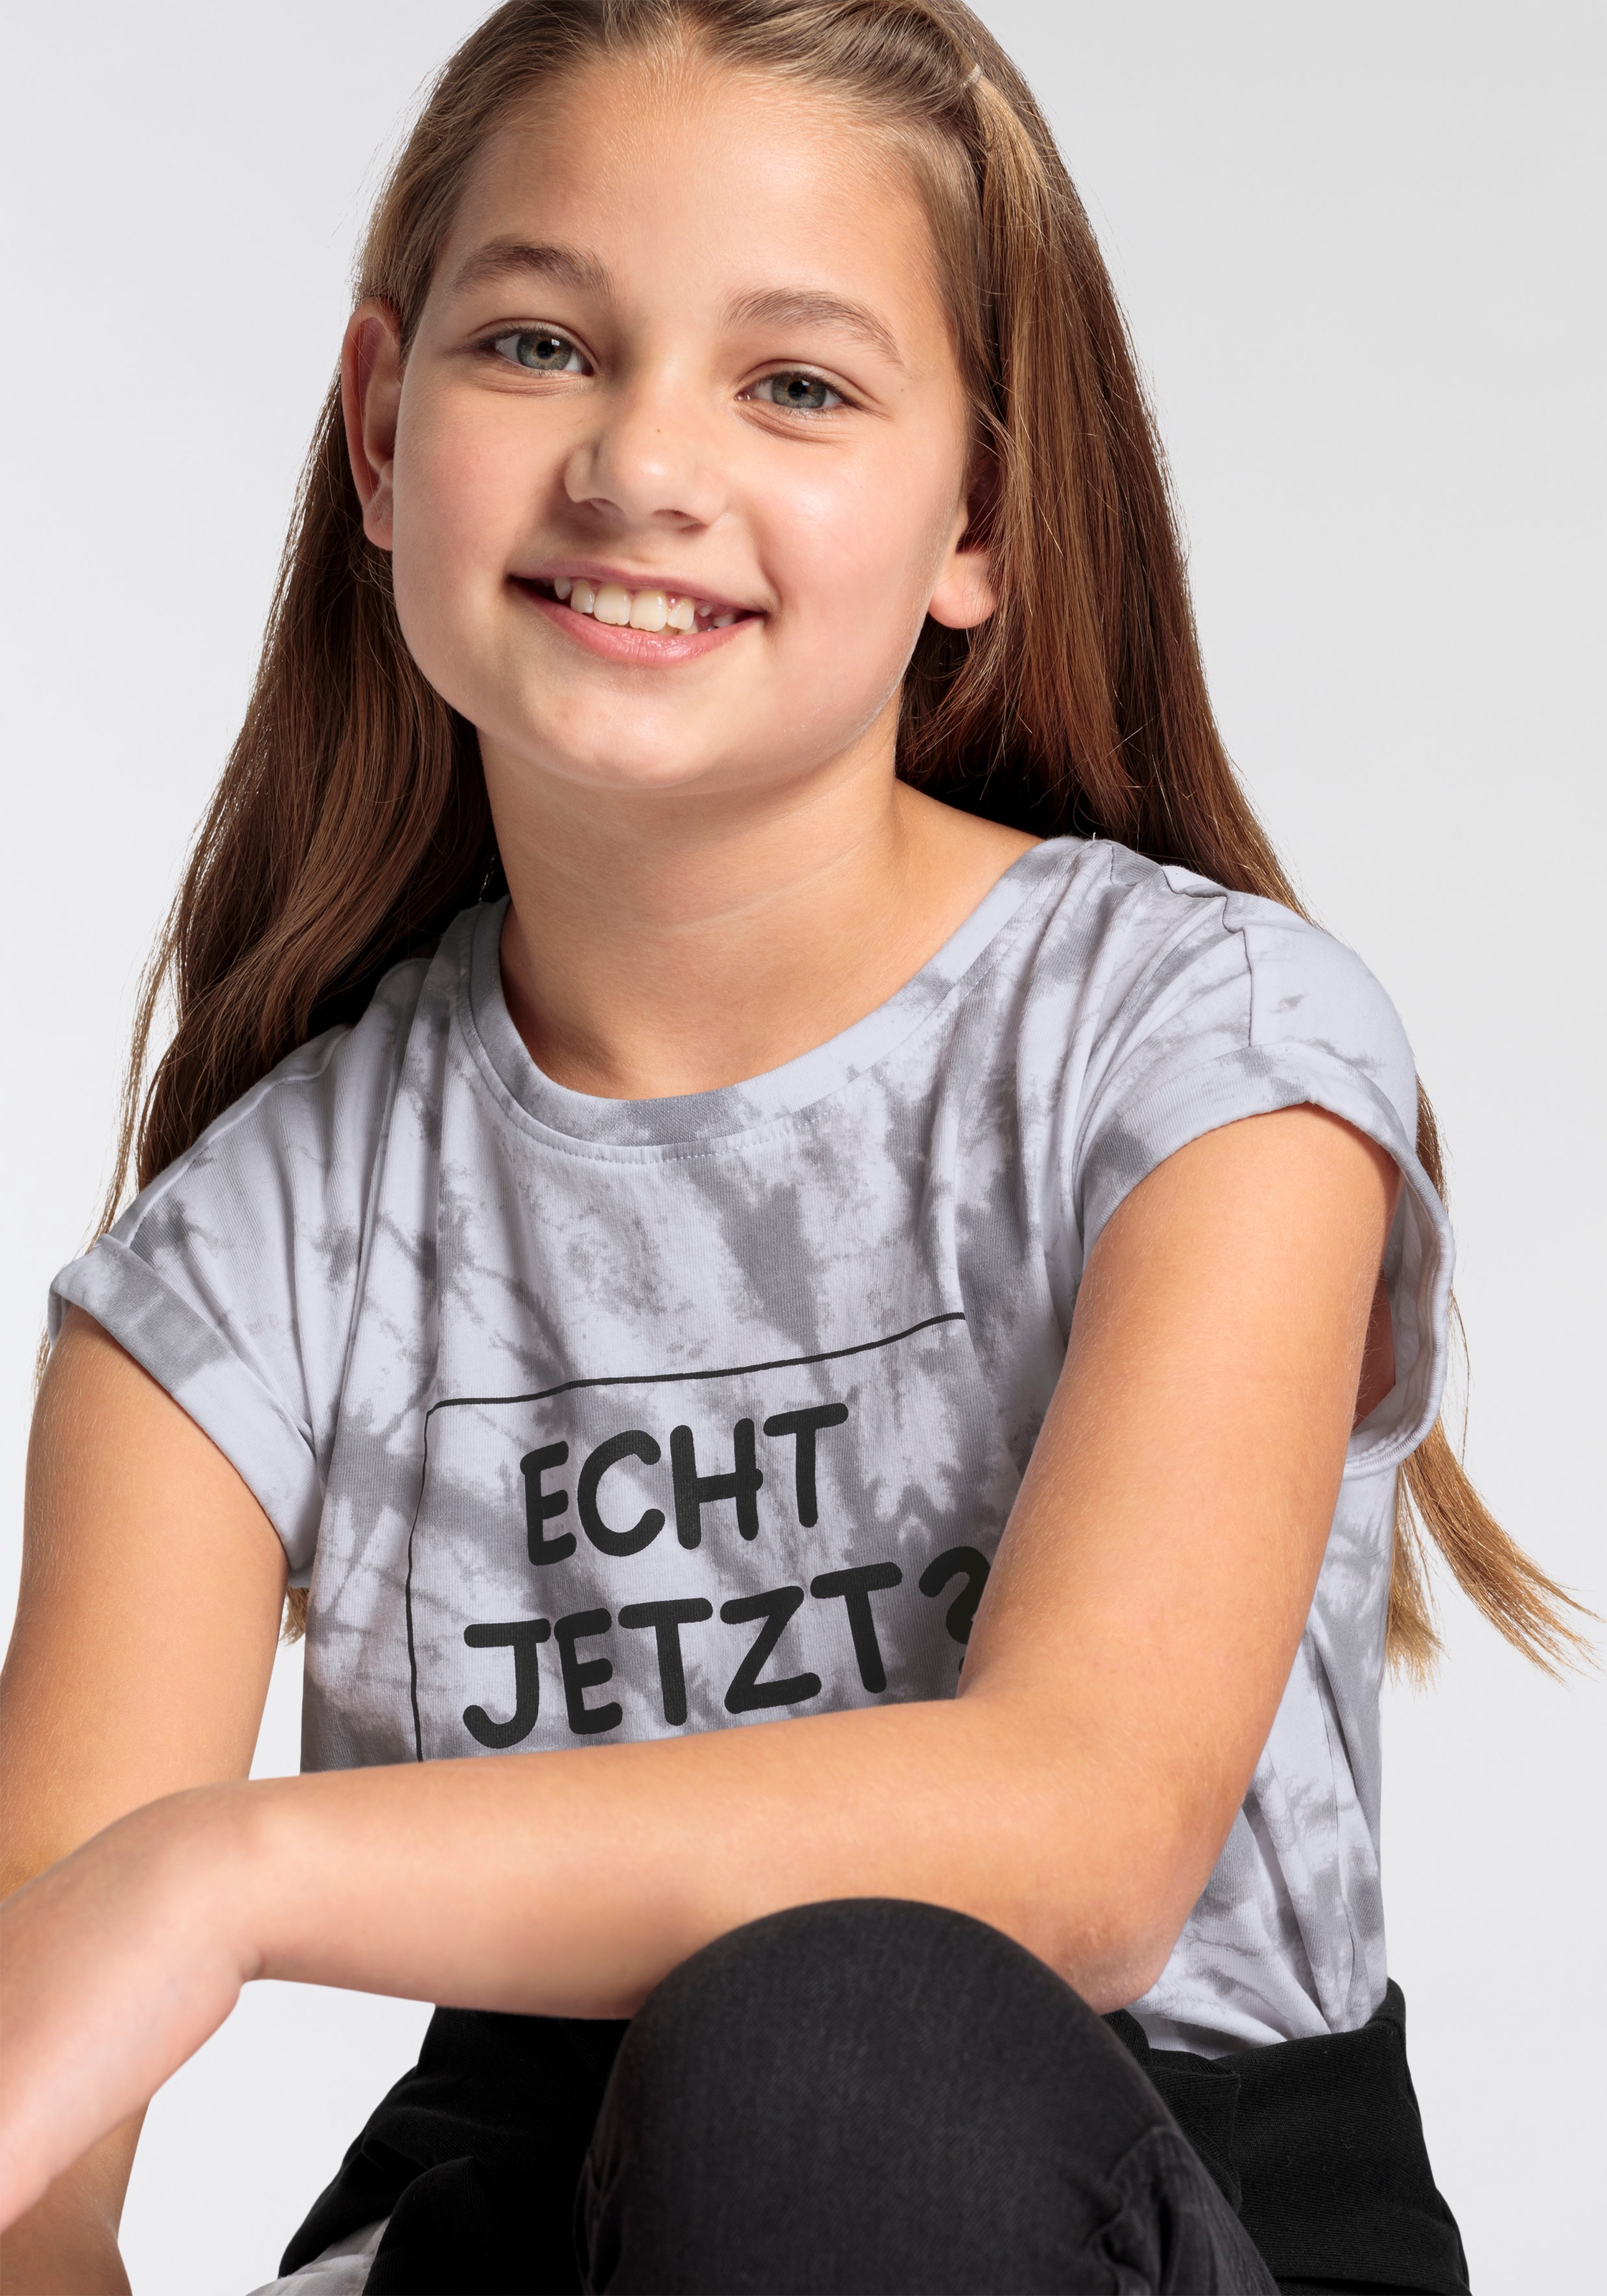 KIDSWORLD T-Shirt »ECHT JETZT?«, Sprüche-Shirt